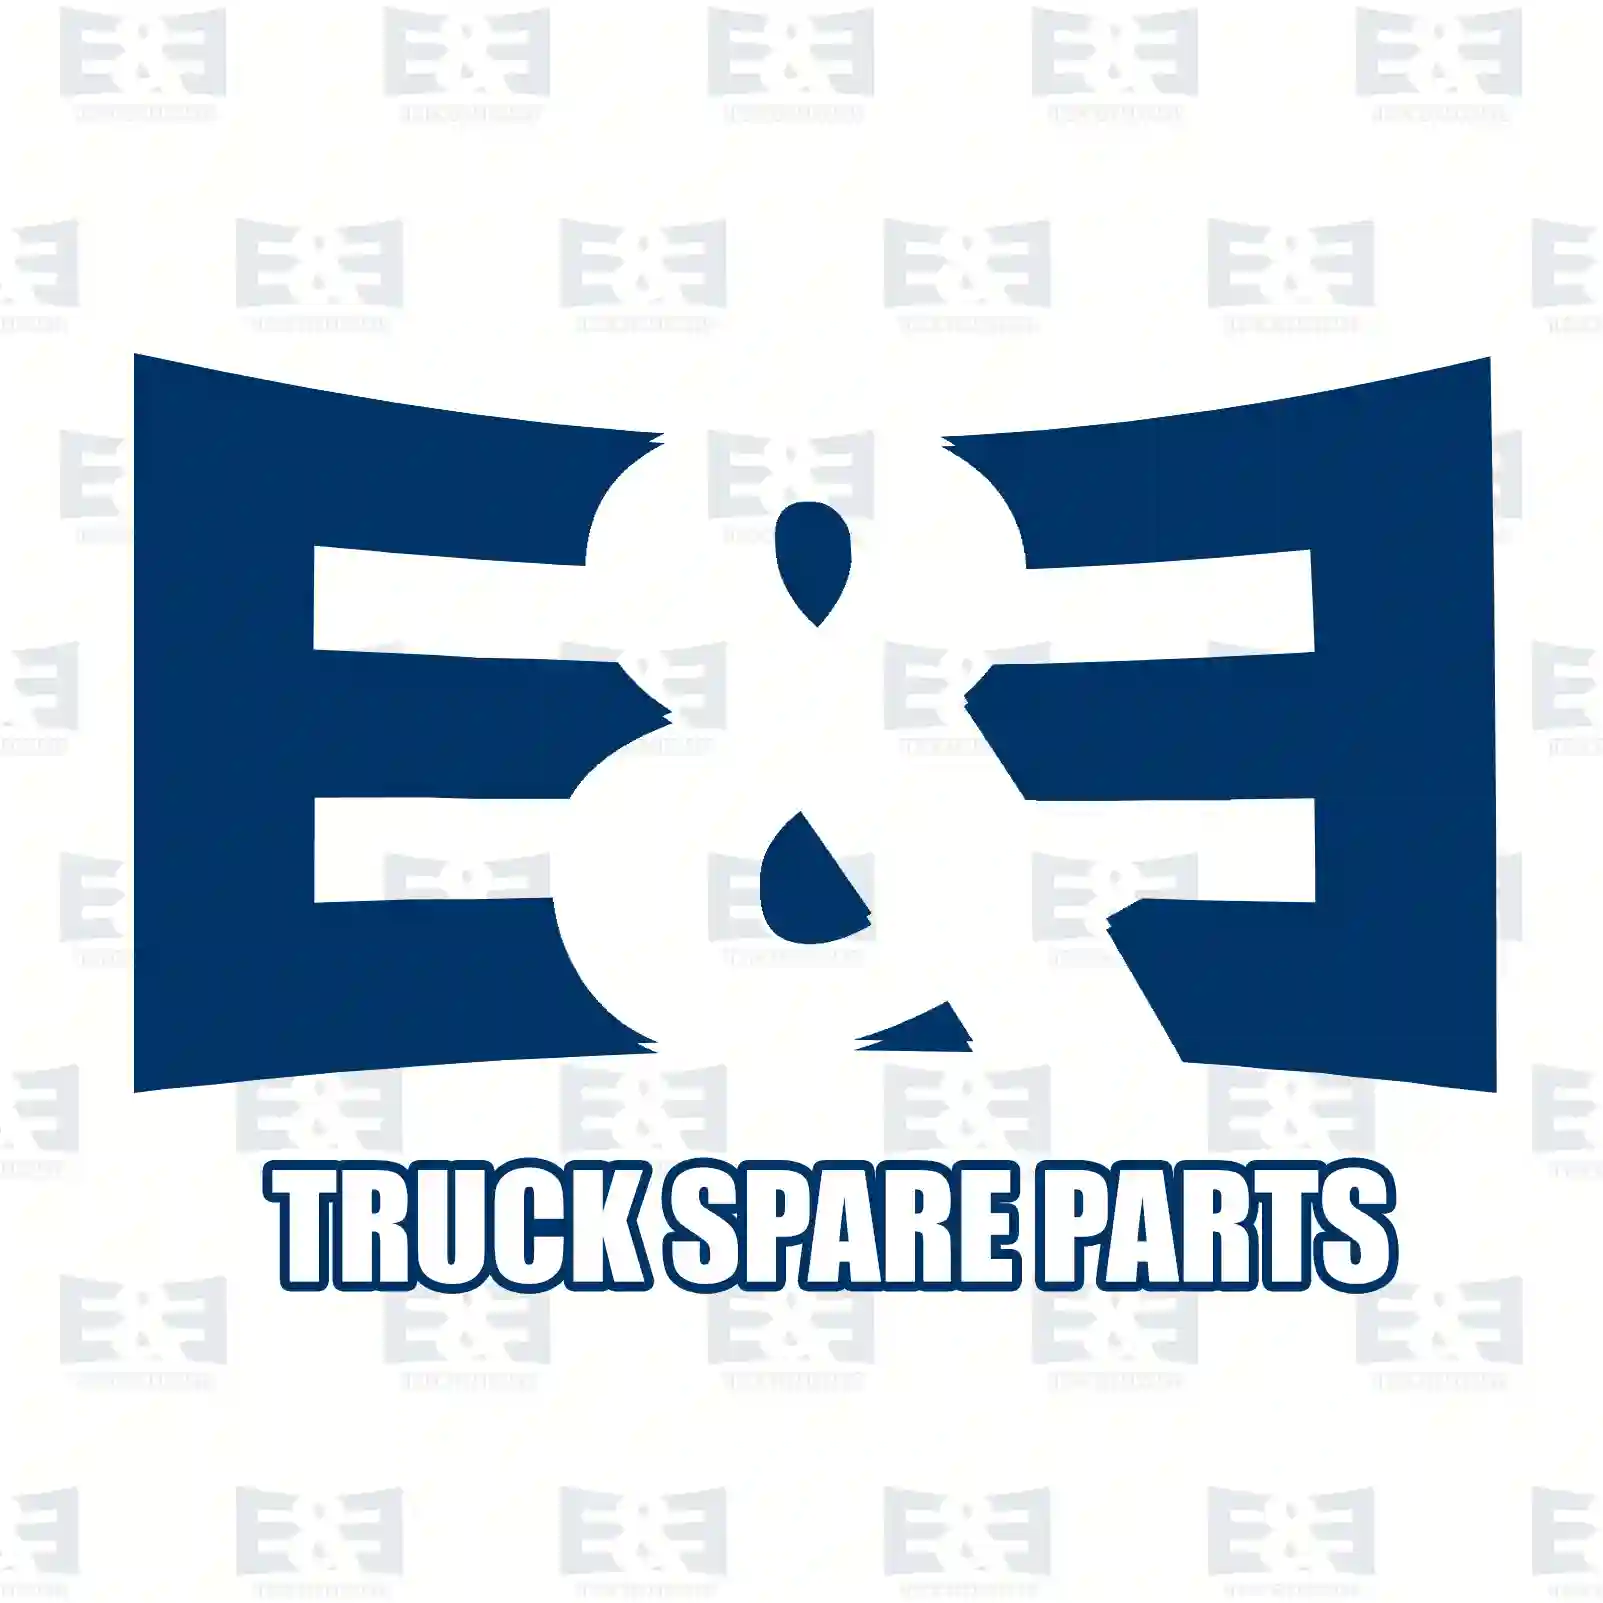 Radiator, 2E2203770, 1370865, 1371296, 1383315, 6C11-8005-AB, 6C11-8005-AC, 6C11-8005-AD ||  2E2203770 E&E Truck Spare Parts | Truck Spare Parts, Auotomotive Spare Parts Radiator, 2E2203770, 1370865, 1371296, 1383315, 6C11-8005-AB, 6C11-8005-AC, 6C11-8005-AD ||  2E2203770 E&E Truck Spare Parts | Truck Spare Parts, Auotomotive Spare Parts